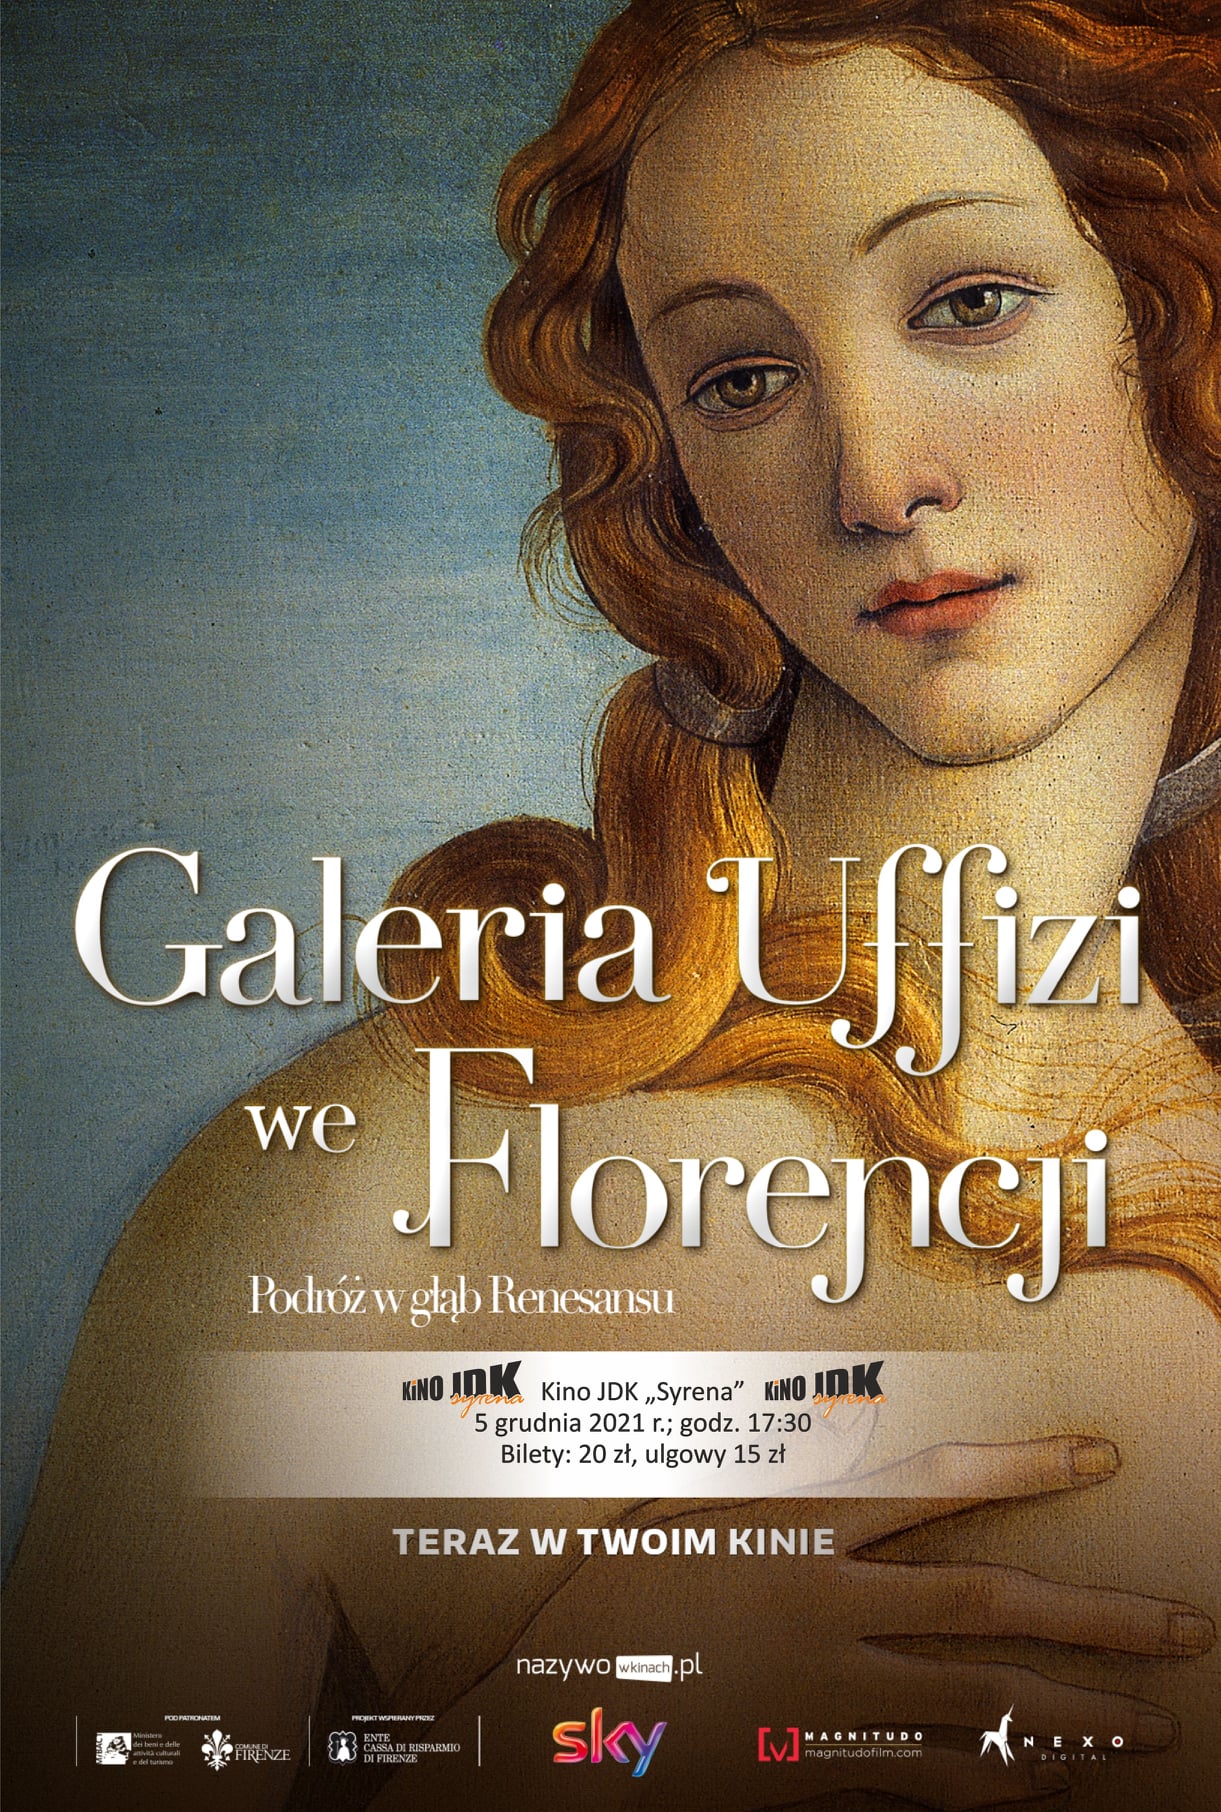 Galeria Uffizi we Florencji w kinie jdk